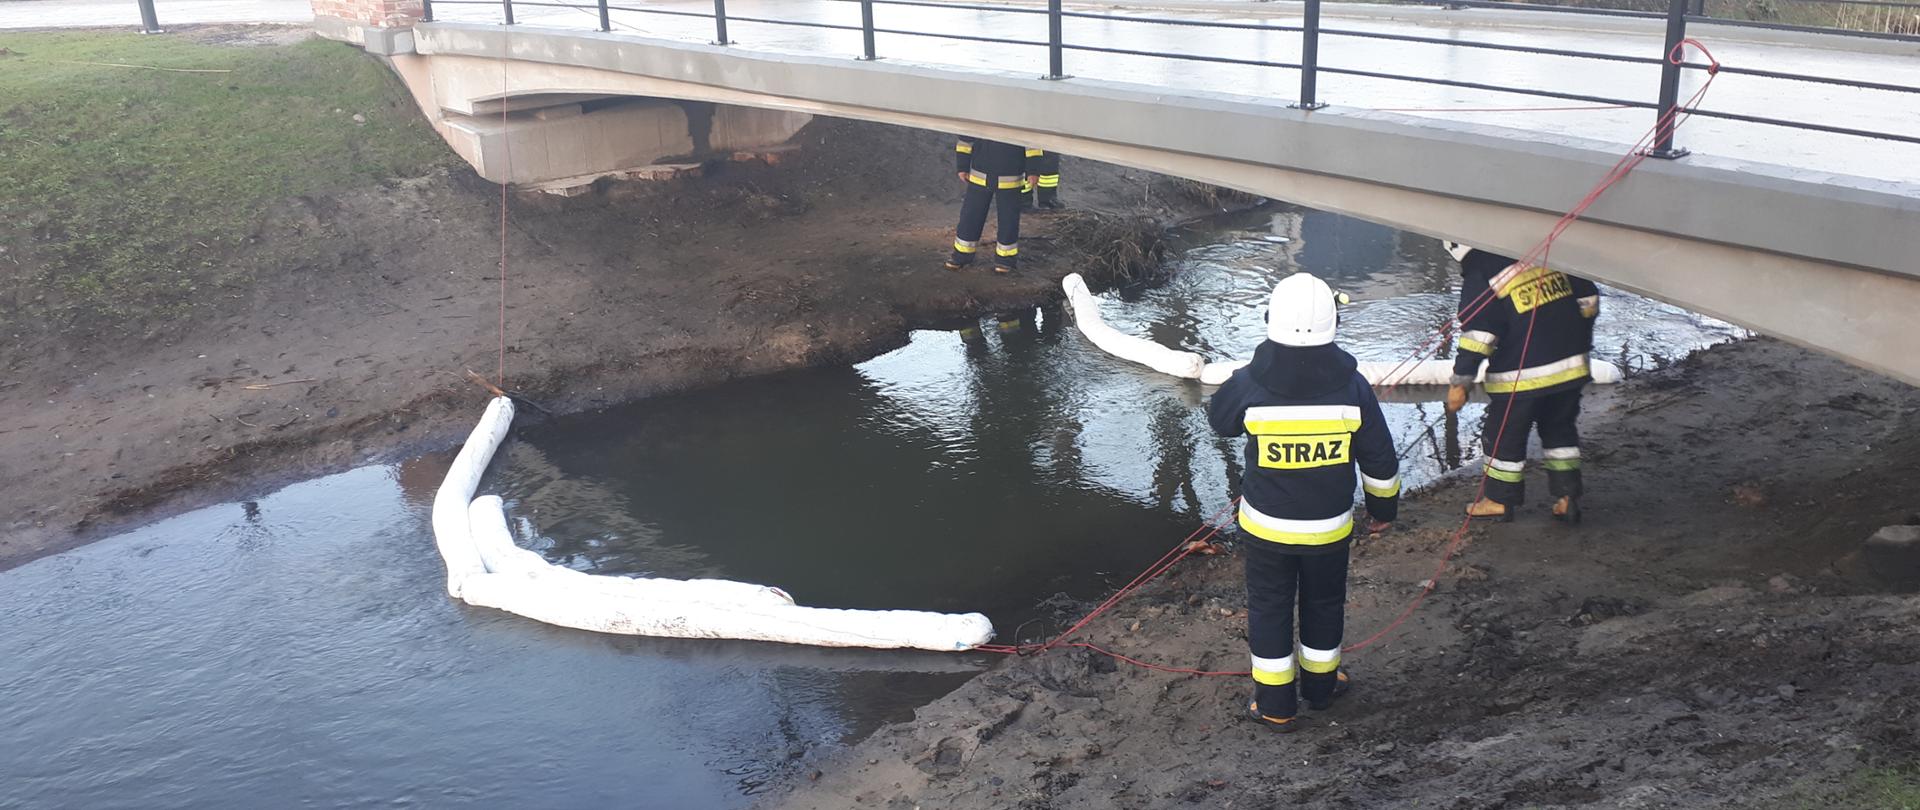 Na zdjęciu widać czterech strażaków, ubranych w stroje strażackie, znajdujący się pod małym mostkiem, pod którym płynie rzeczka ( po dwóch strażaków na jeden brzeg rzeki). Na rzece widać rozłożone 2 rękawy sorpcyjne .